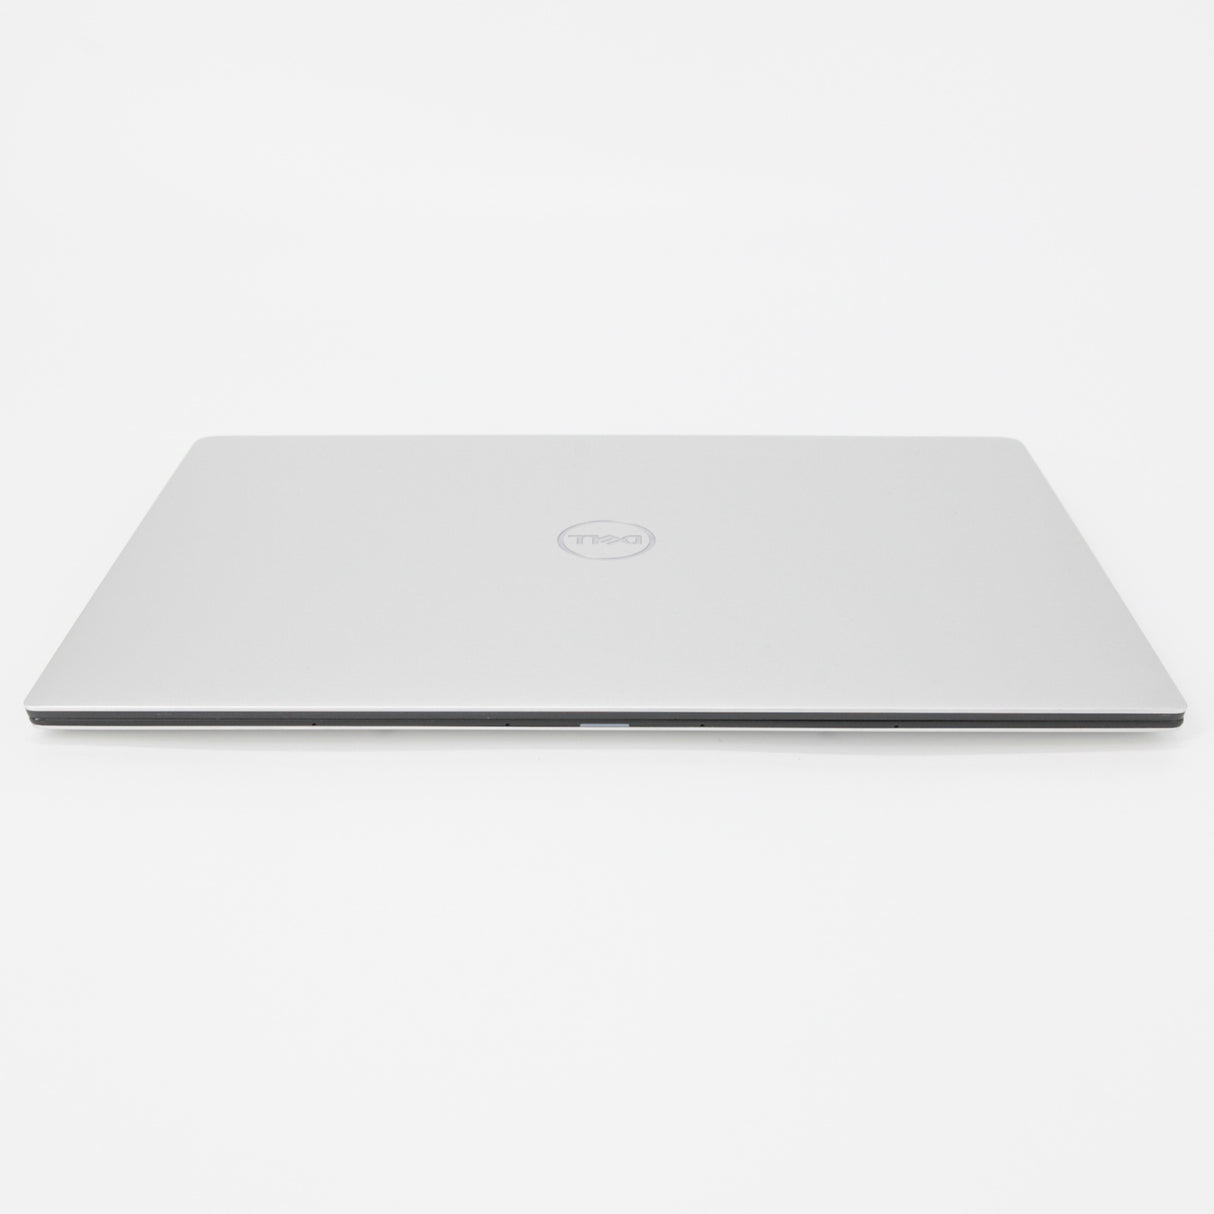 Dell XPS 13 7390 13.3" Laptop: 10th Gen Core i5, 8GB RAM, 256GB SSD Warranty VAT - GreenGreen Store